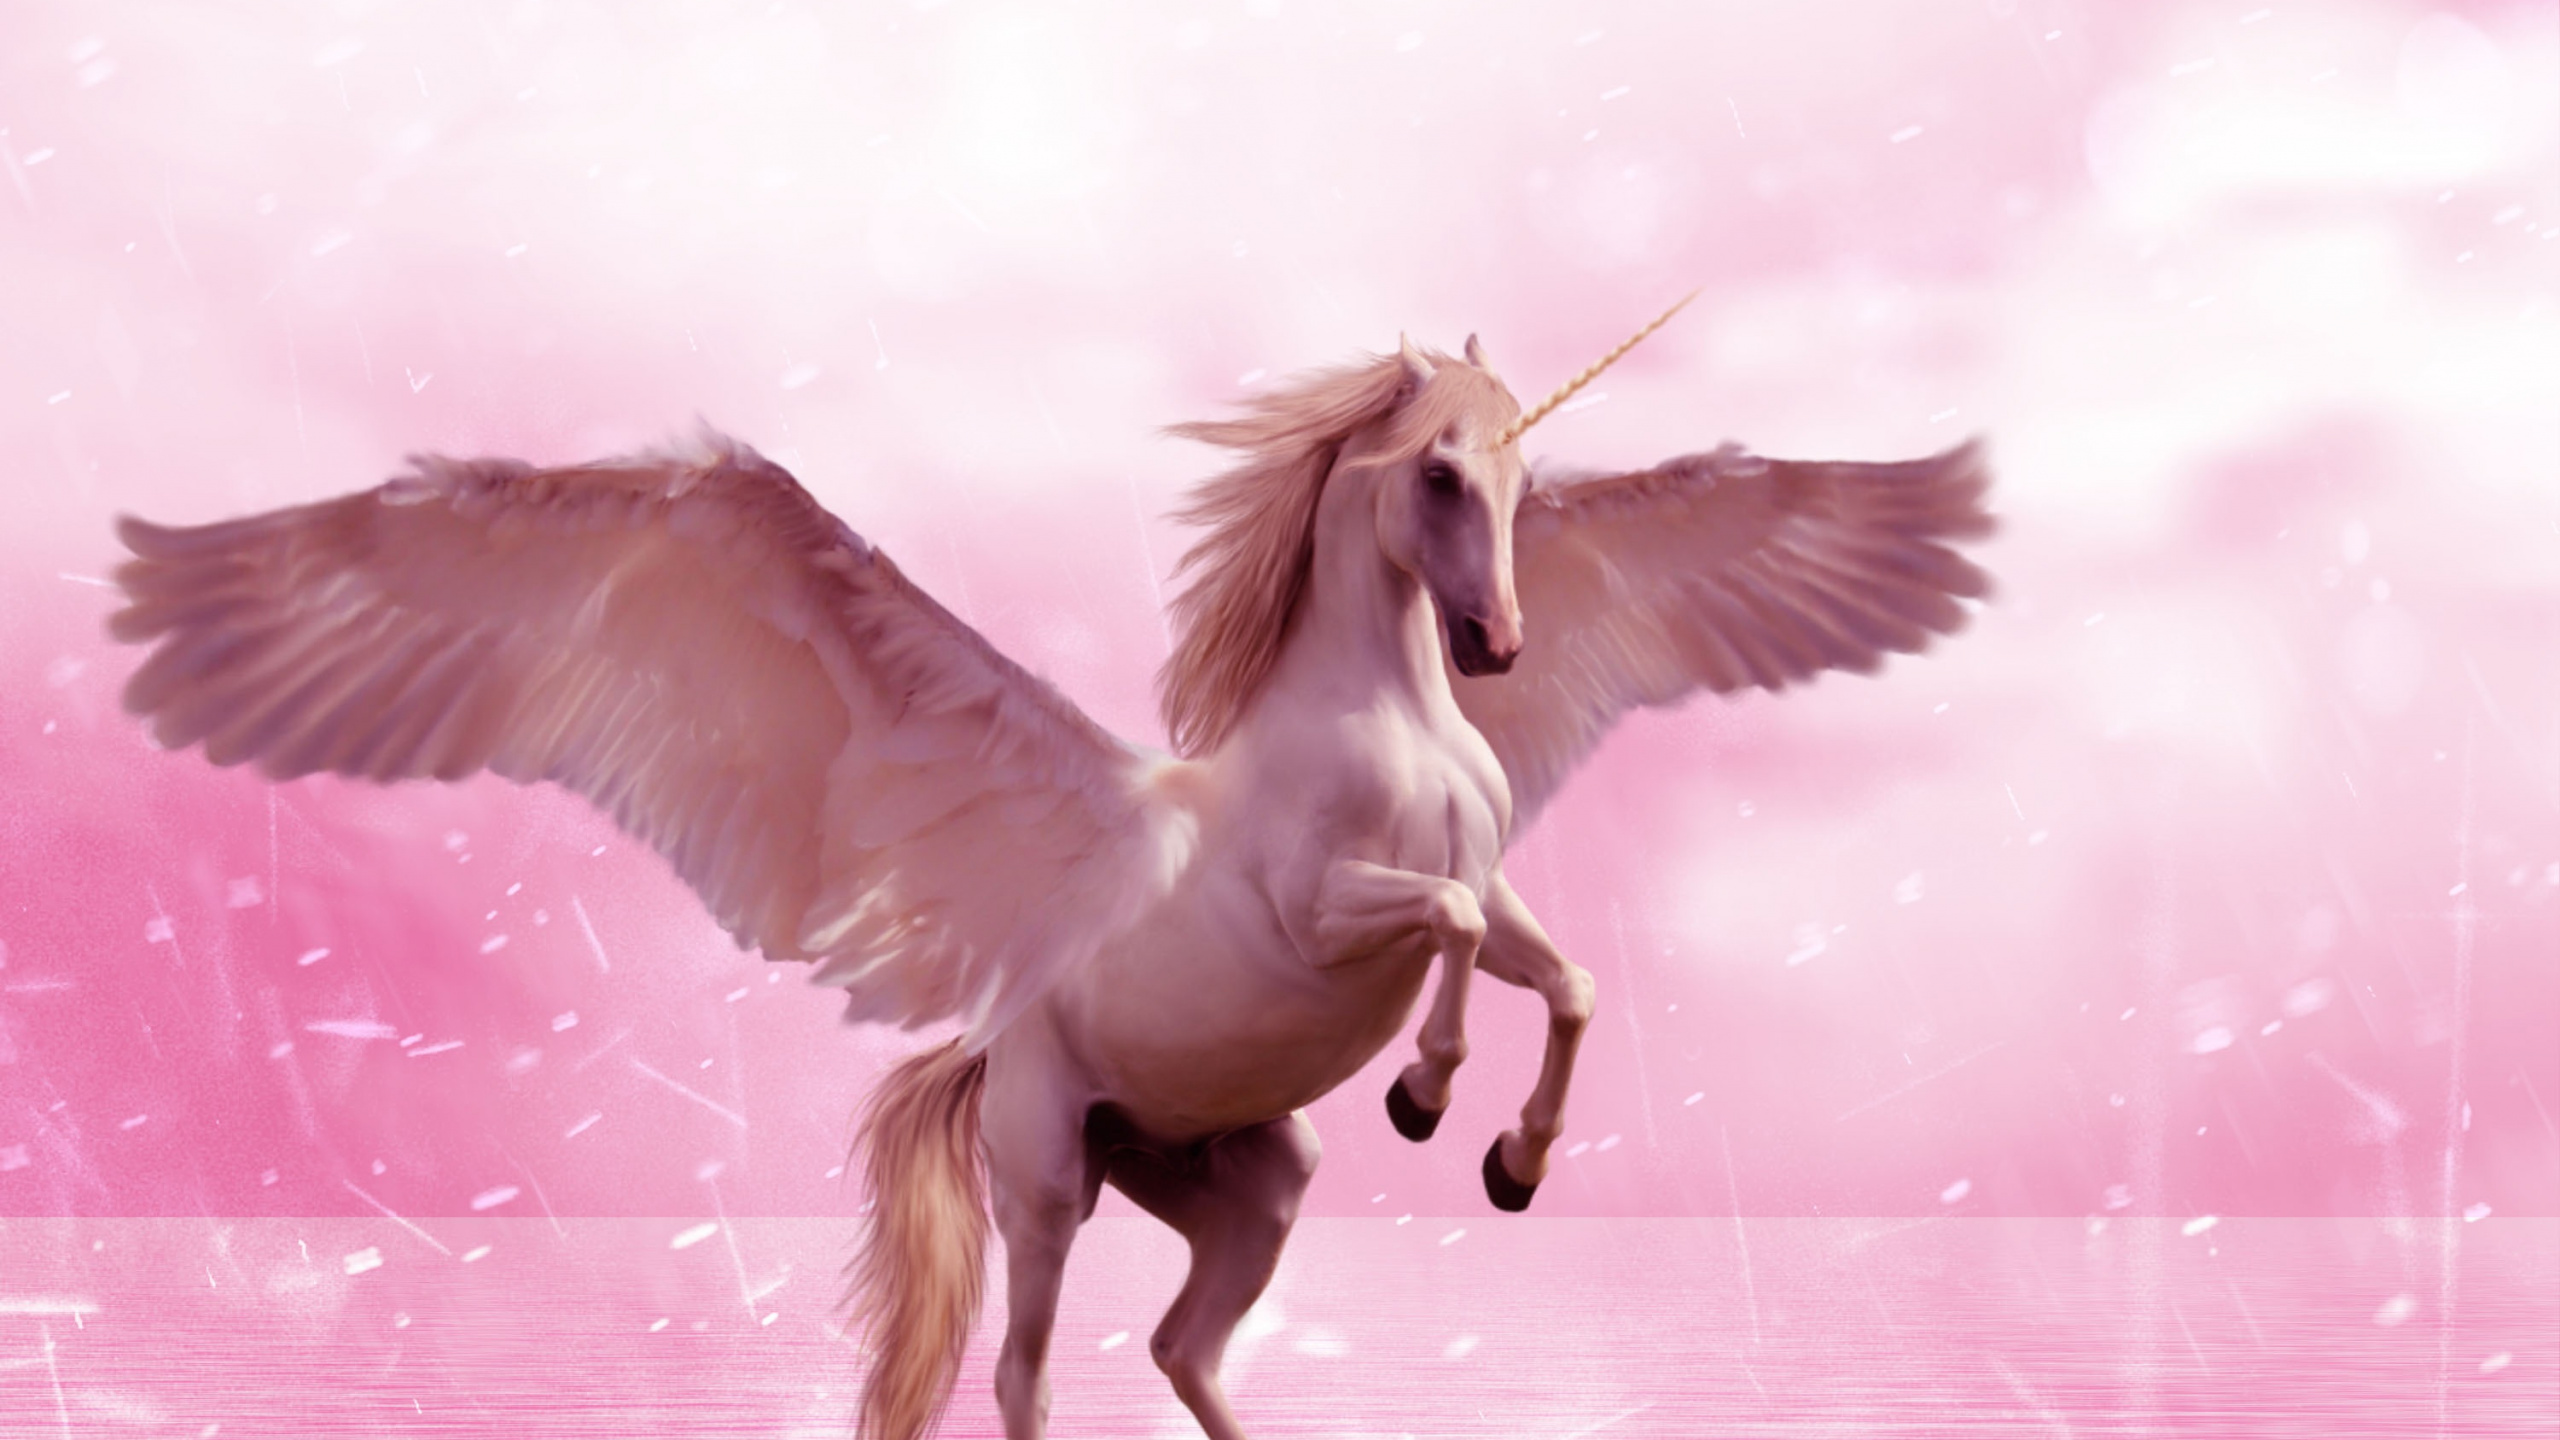 独角兽, 飞马, 翼, 粉红色, 神秘的生物 壁纸 2560x1440 允许